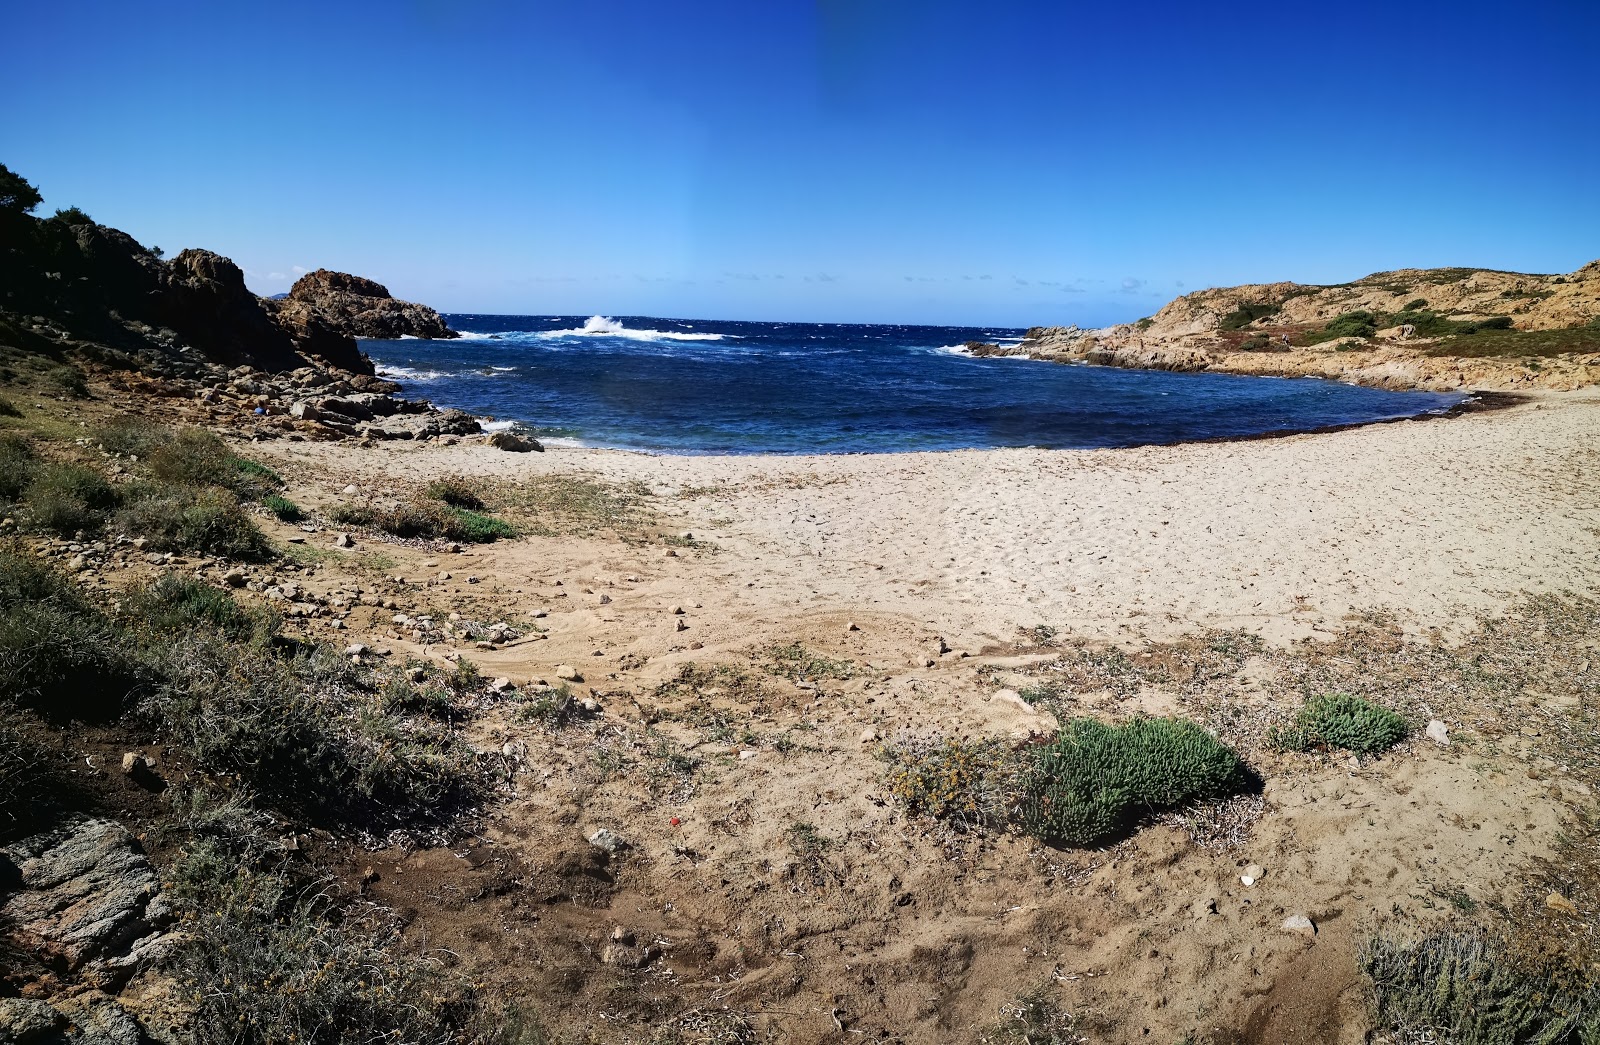 Vana beach'in fotoğrafı hafif ince çakıl taş yüzey ile